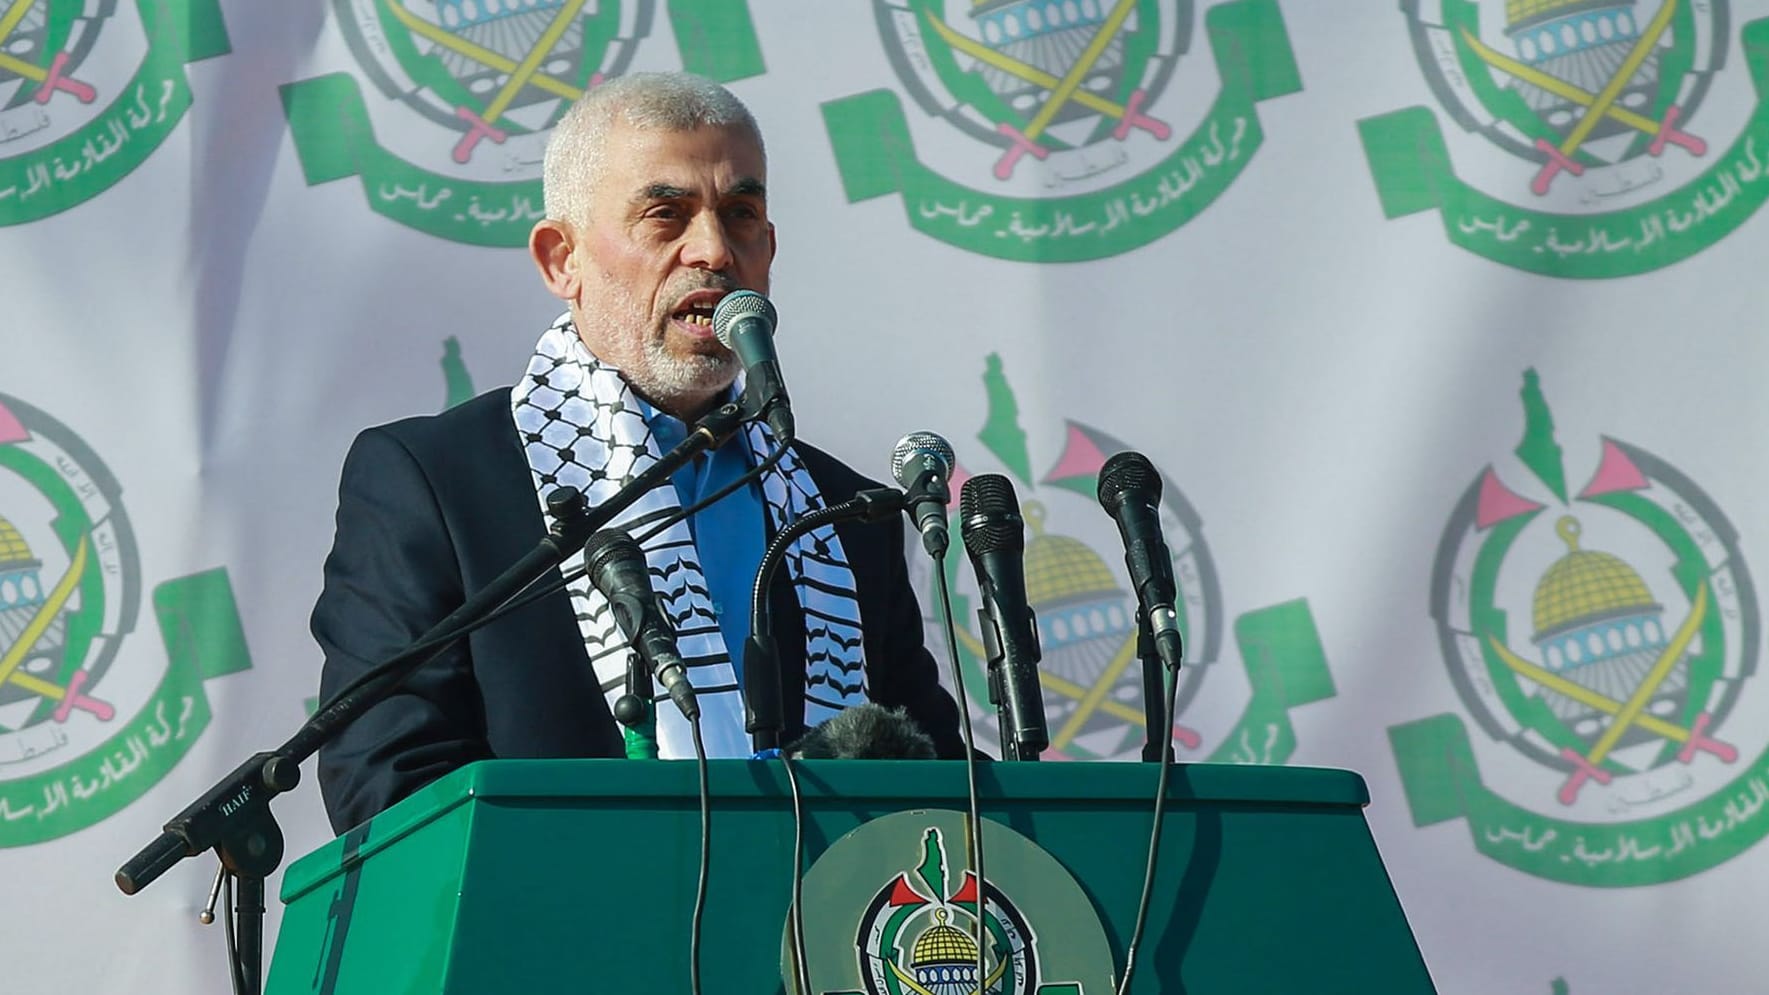 Bericht: Hamas haben keinen Kontakt zu Chef in Gaza | Nahost-Newsblog